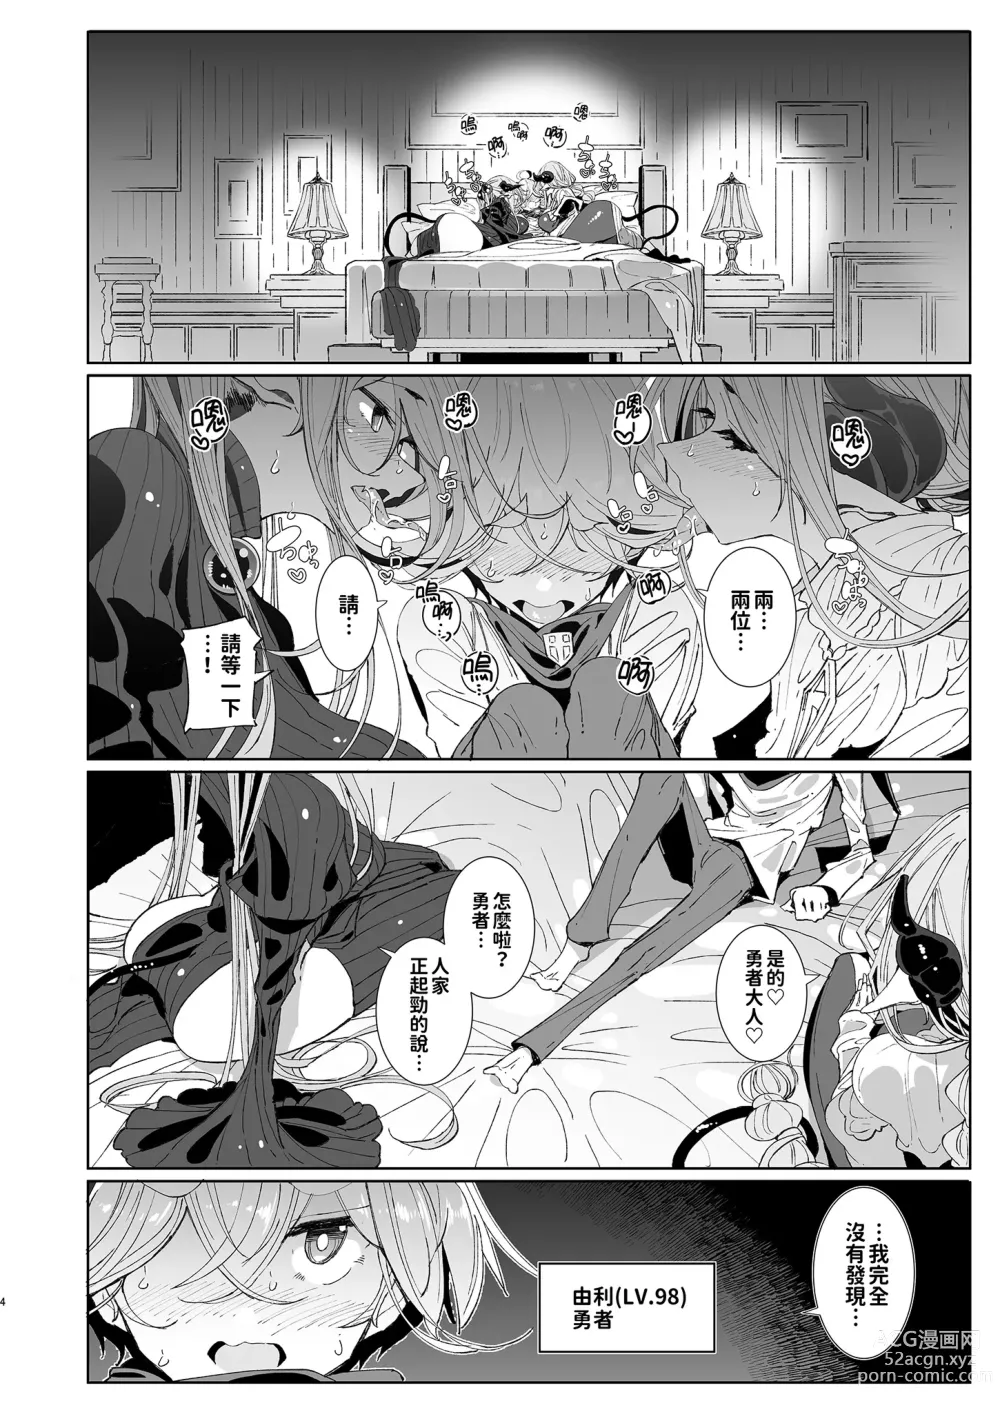 Page 4 of doujinshi 勇者和兩位扶她淫魔在討伐魔王後肯定要做那件事吧! (decensored)